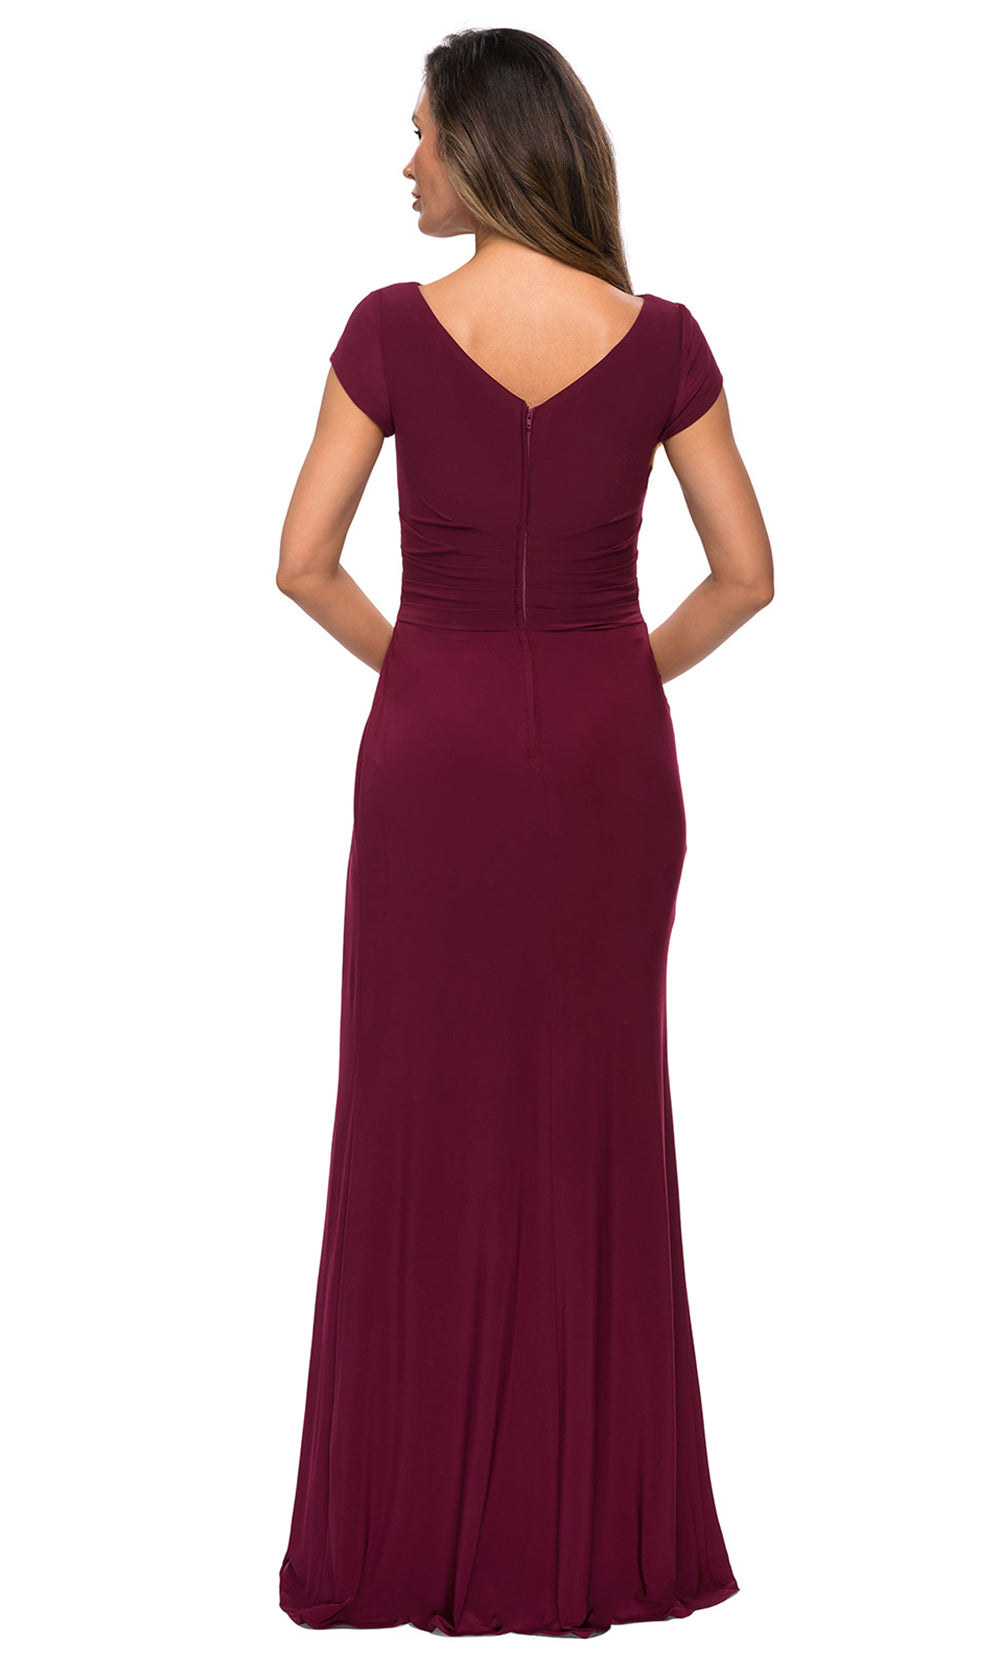 La Femme - 28026 Cap Sleeve Jersey Long Formal Dress In Red